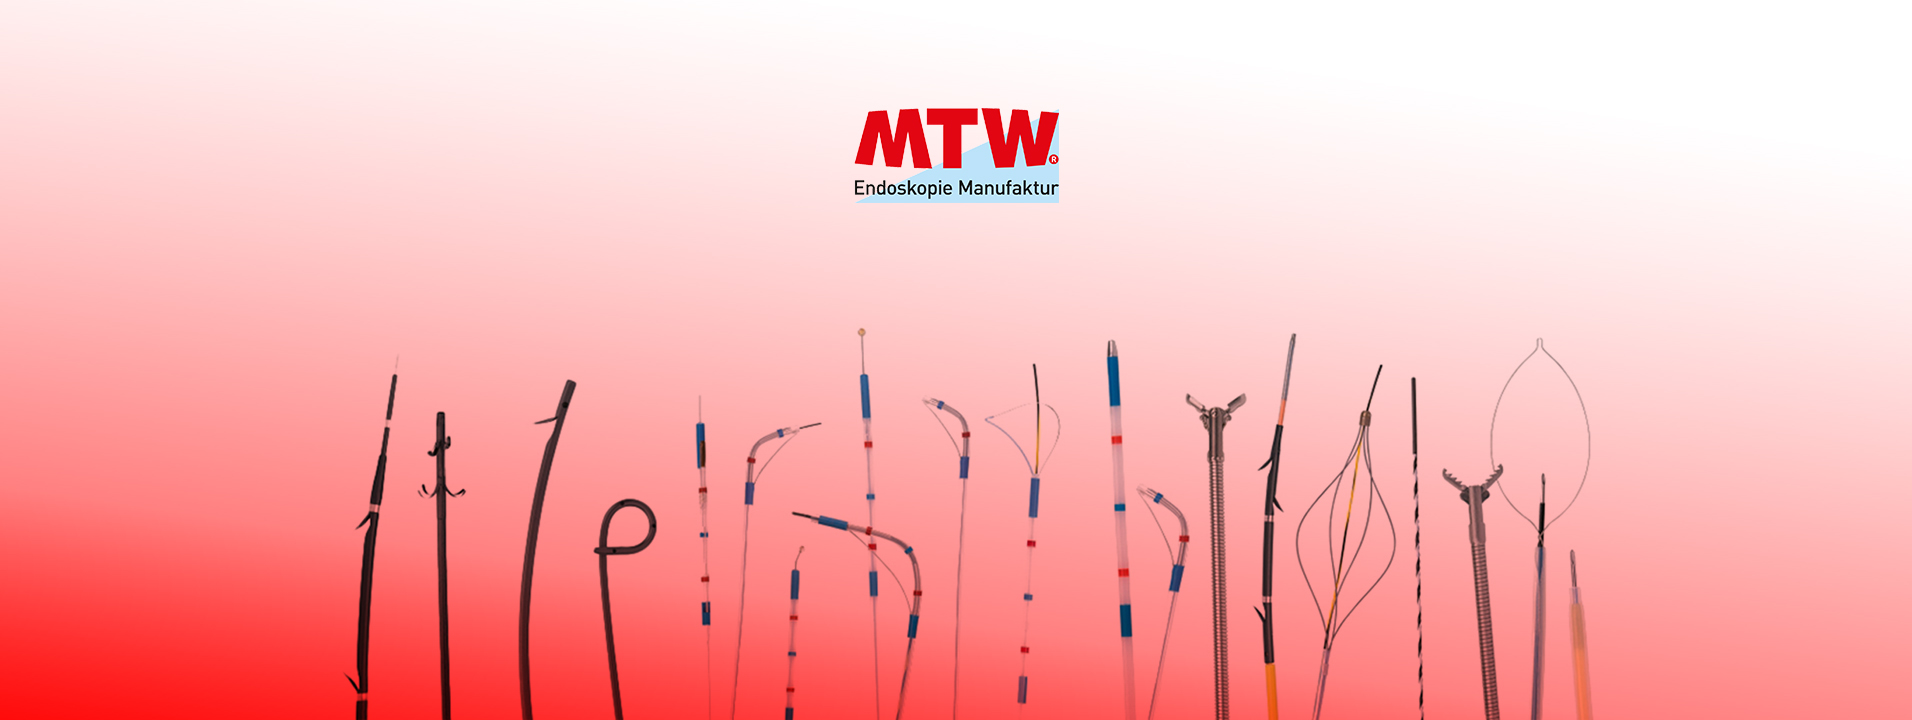 MTW-Endoskopie-1